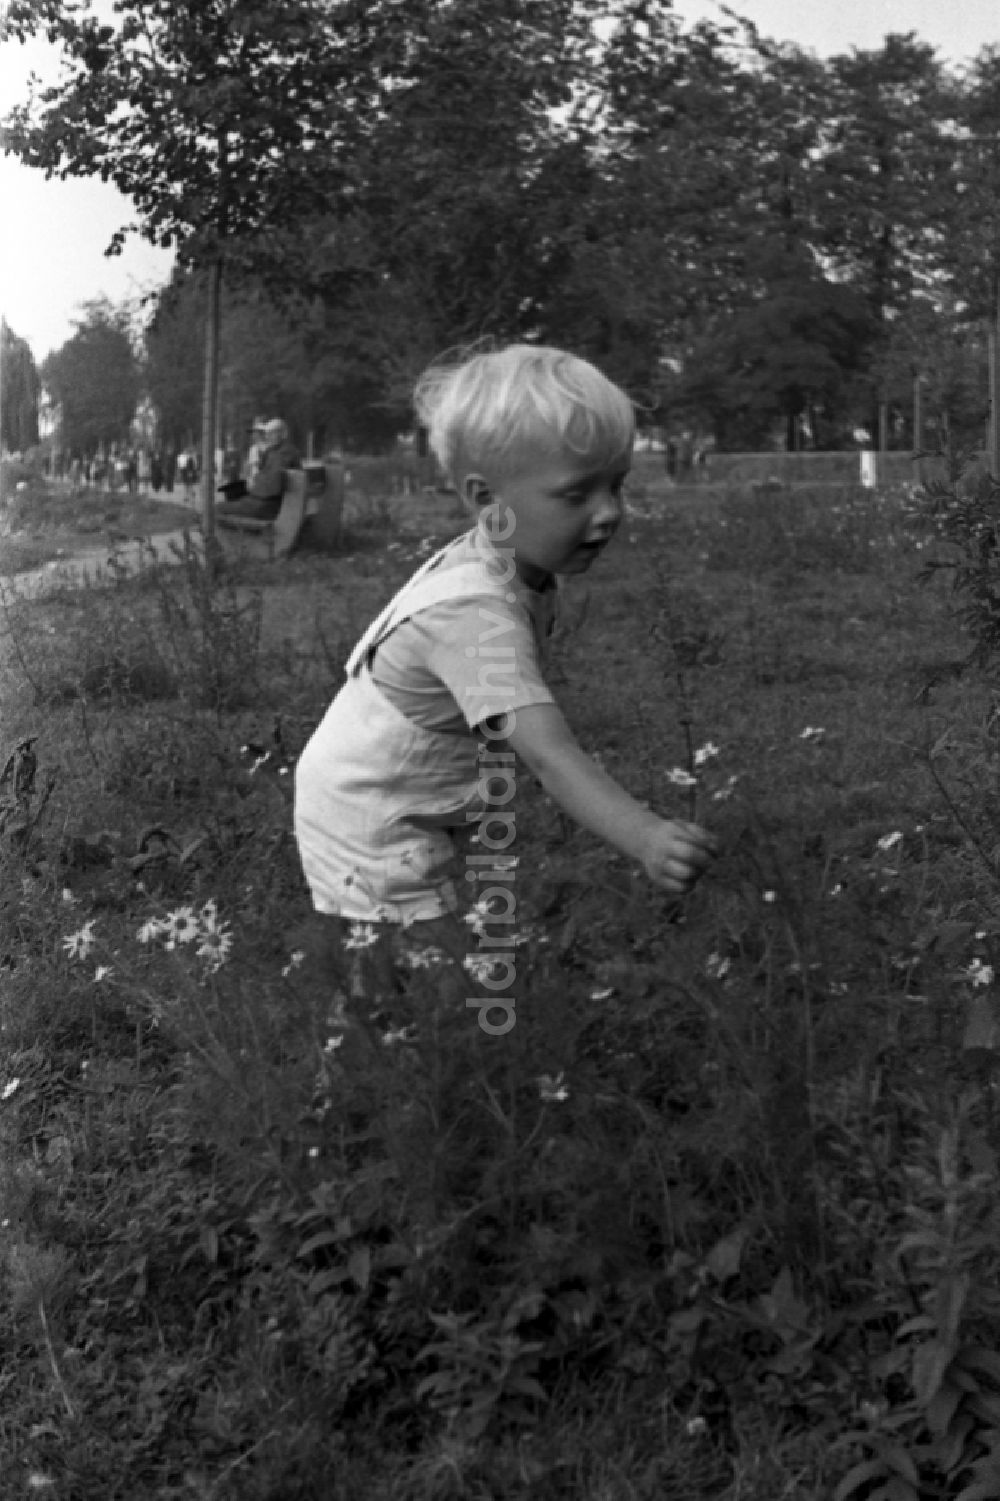 DDR-Bildarchiv: Bad Dürrenberg - Kleiner Junge pflückt Blumen auf einer Wiese in Bad Dürrenberg in Deutschland